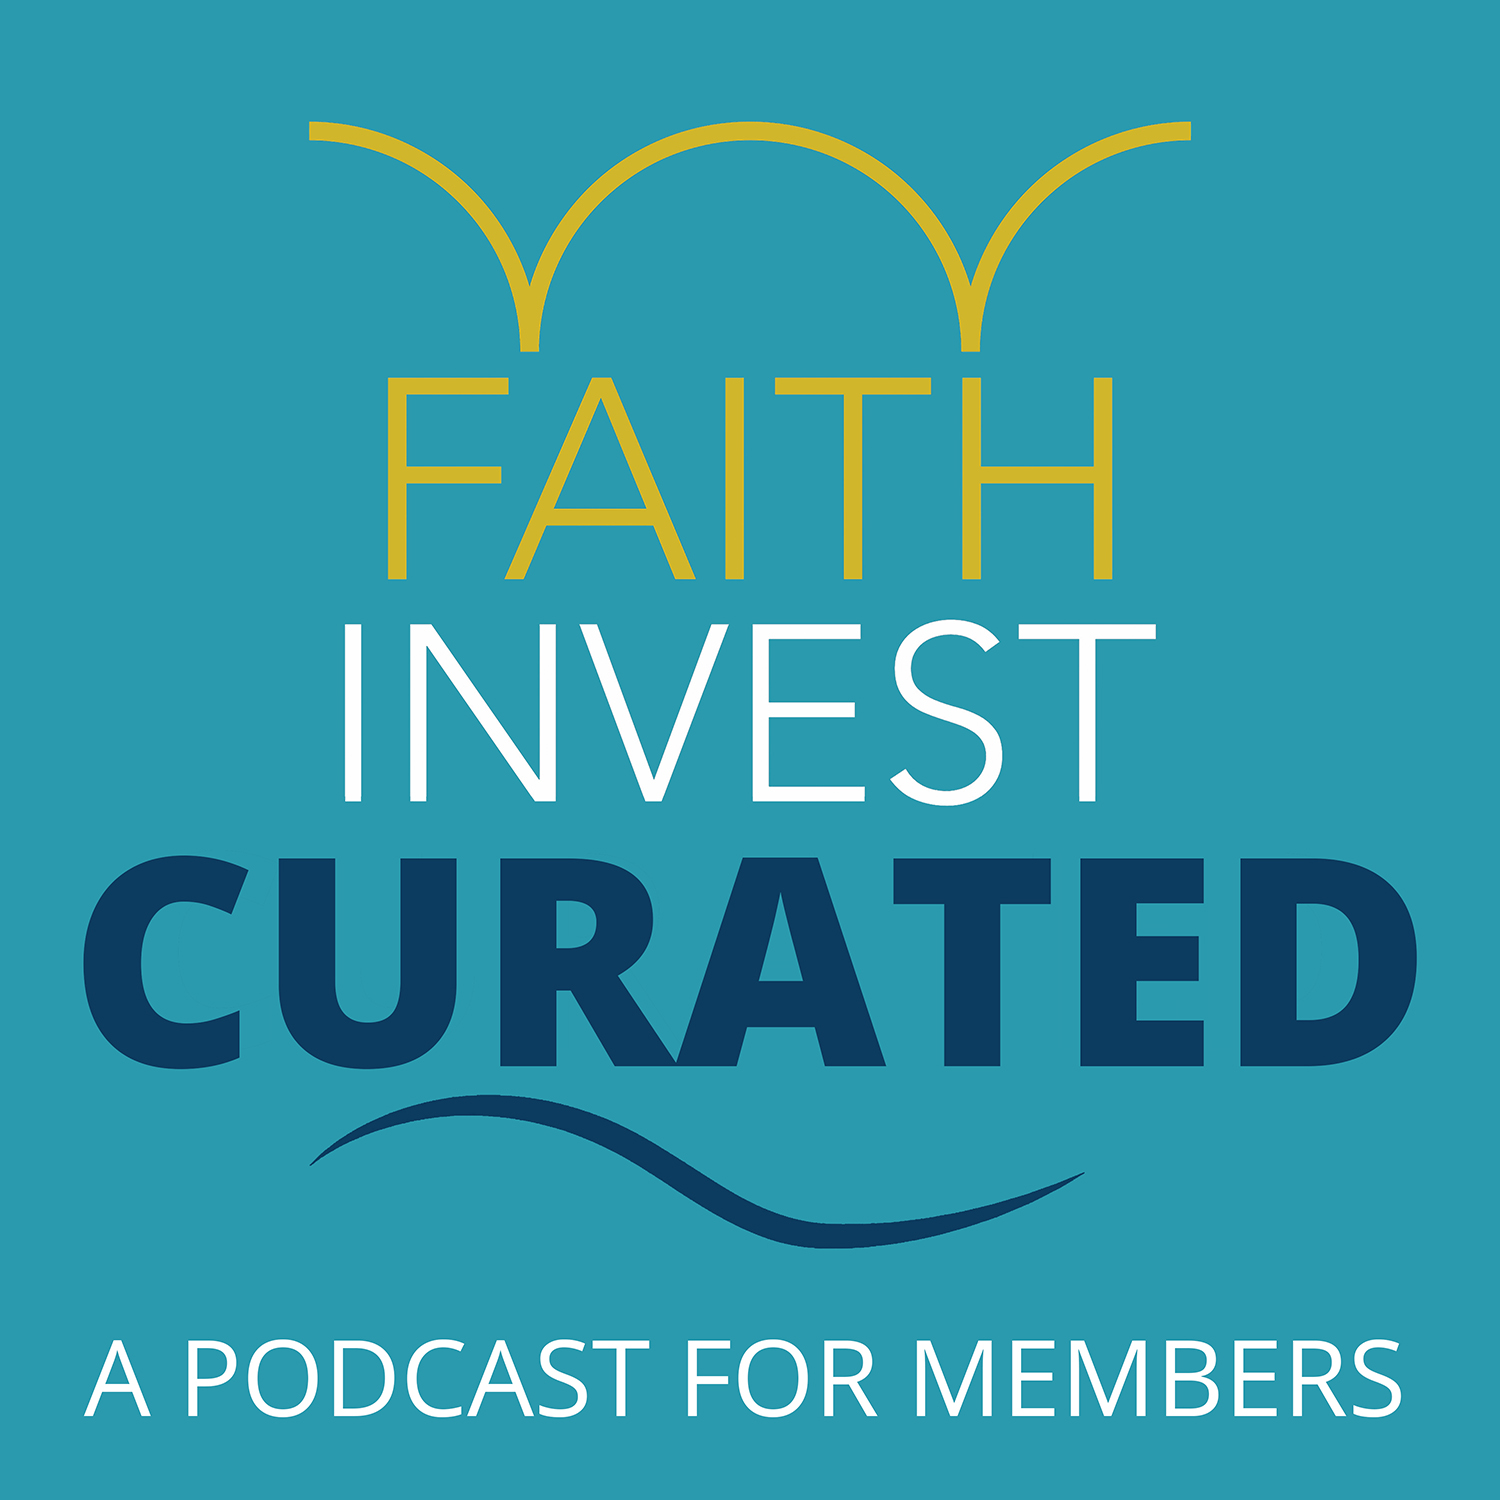 Artwork for podcast FaithInvest: The Member series